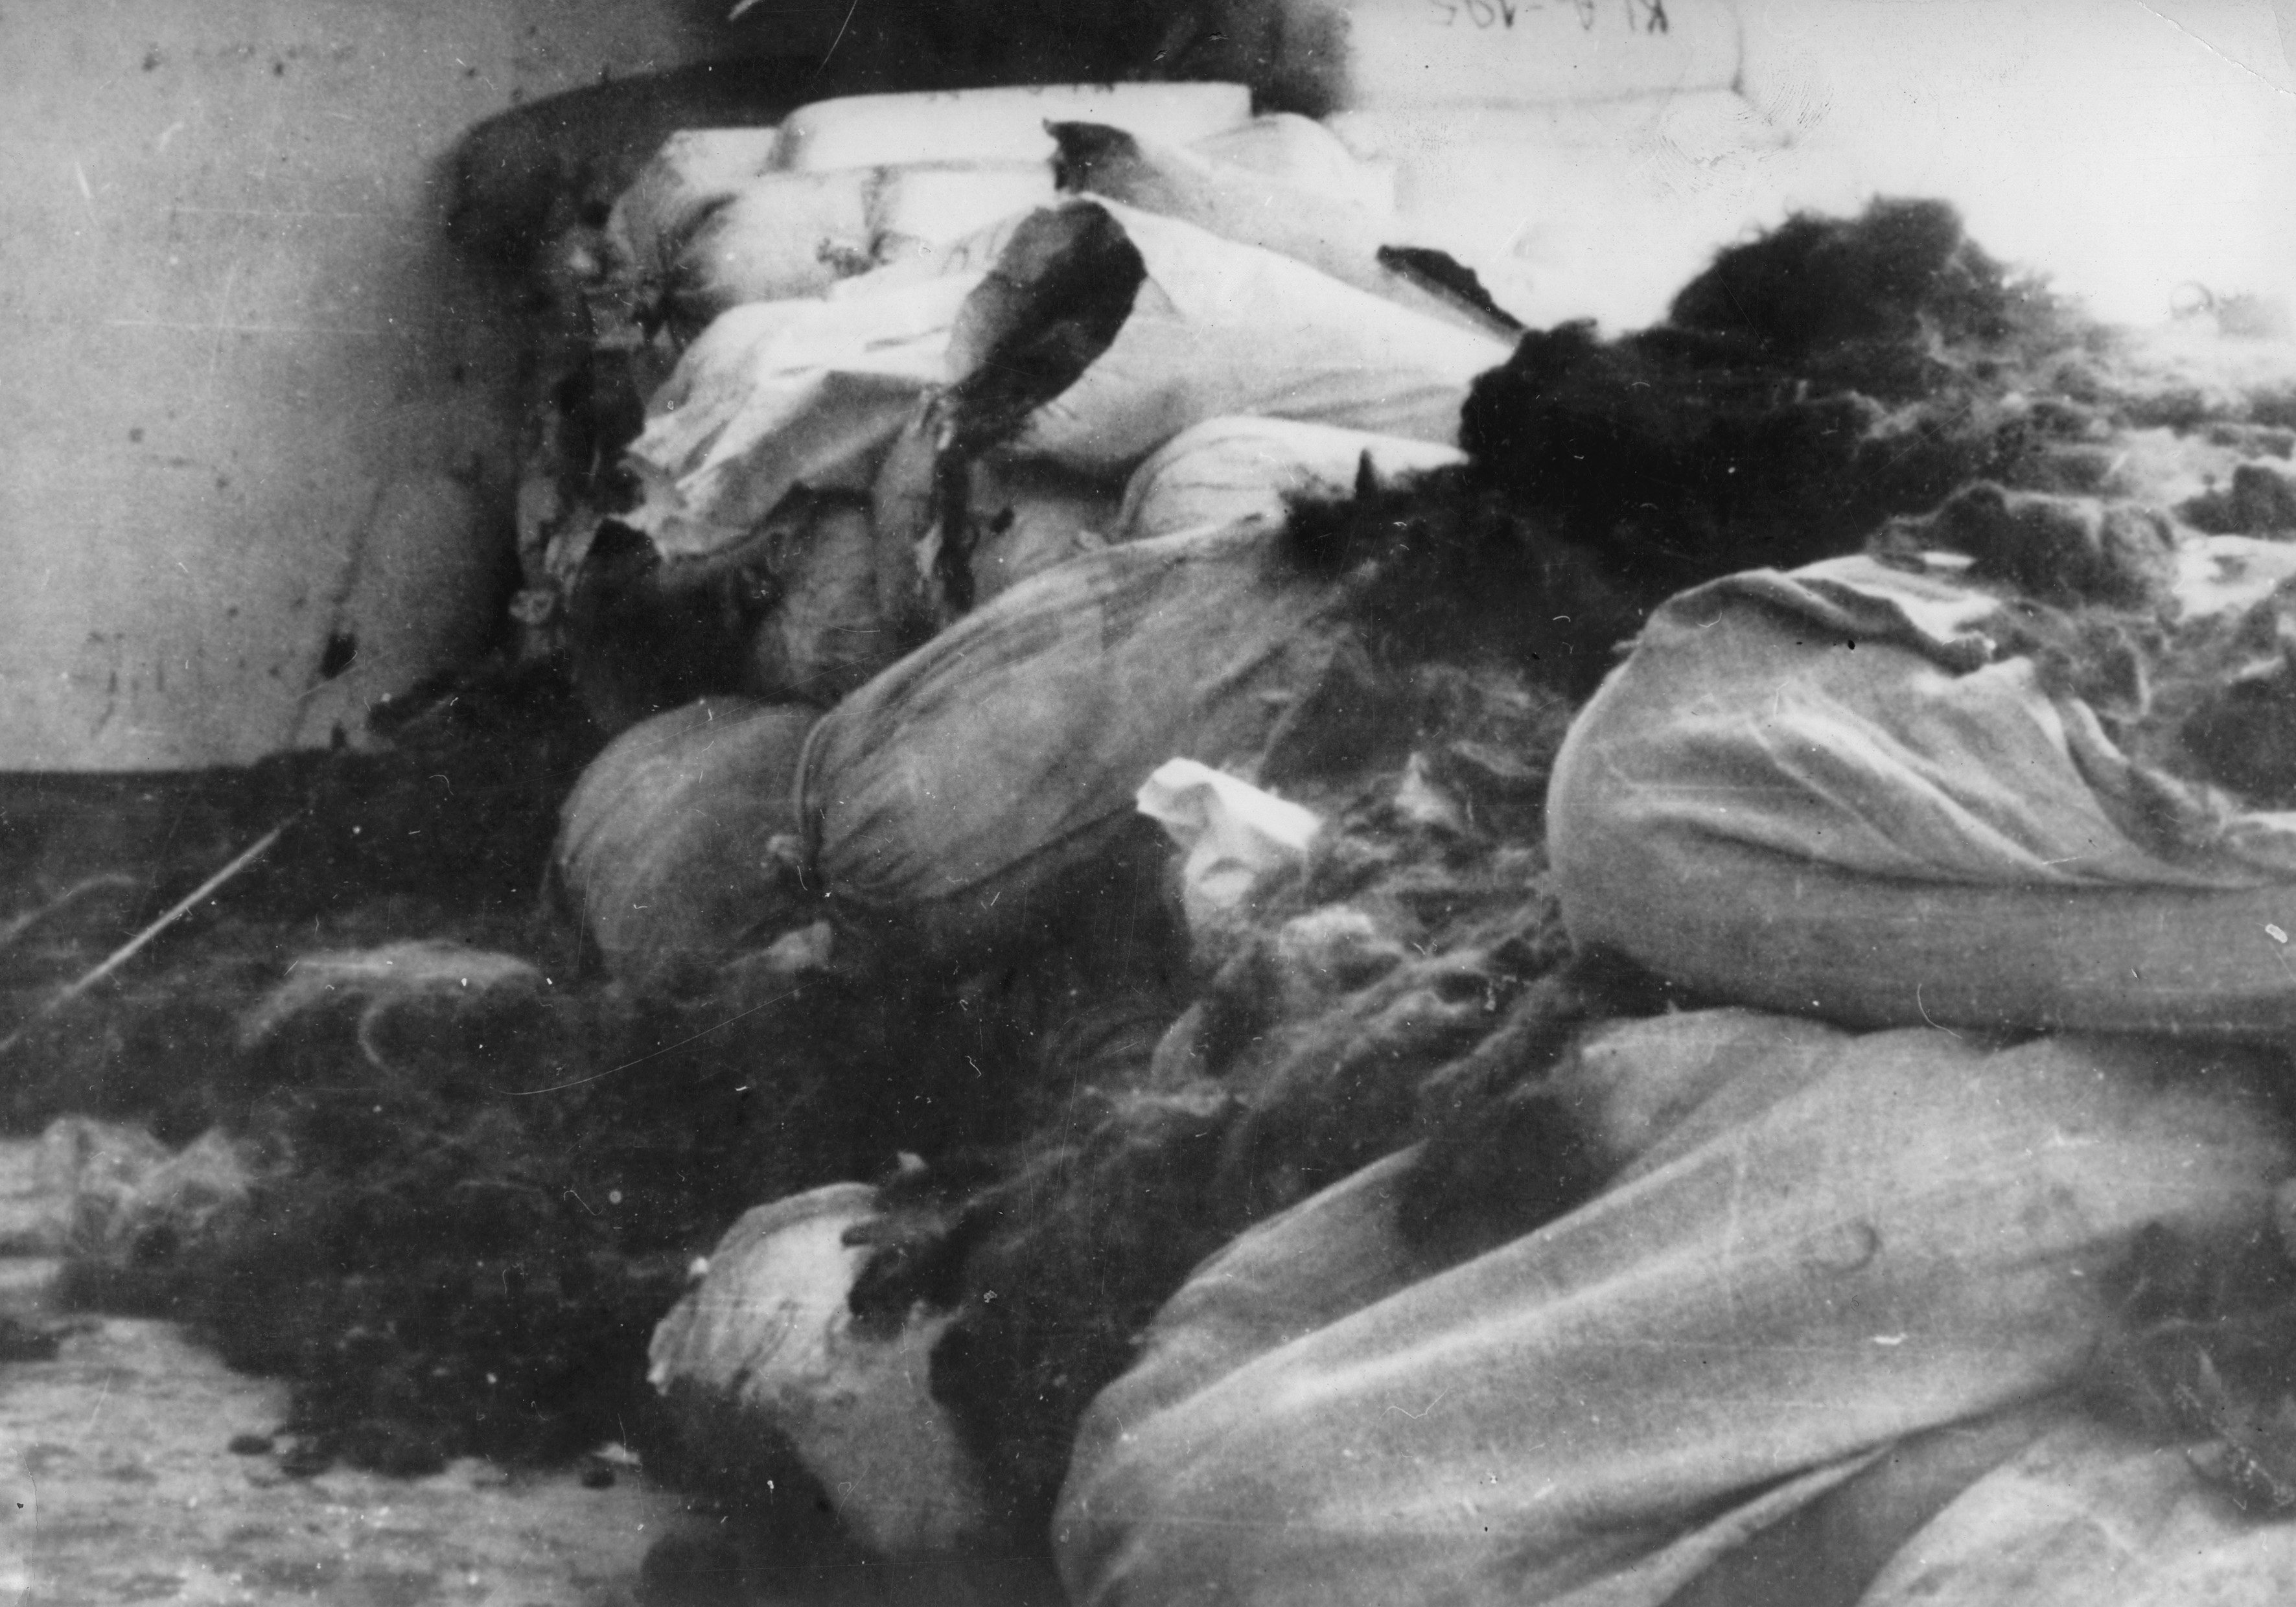 Cabelo dos judeus mortos, em Auschwitz